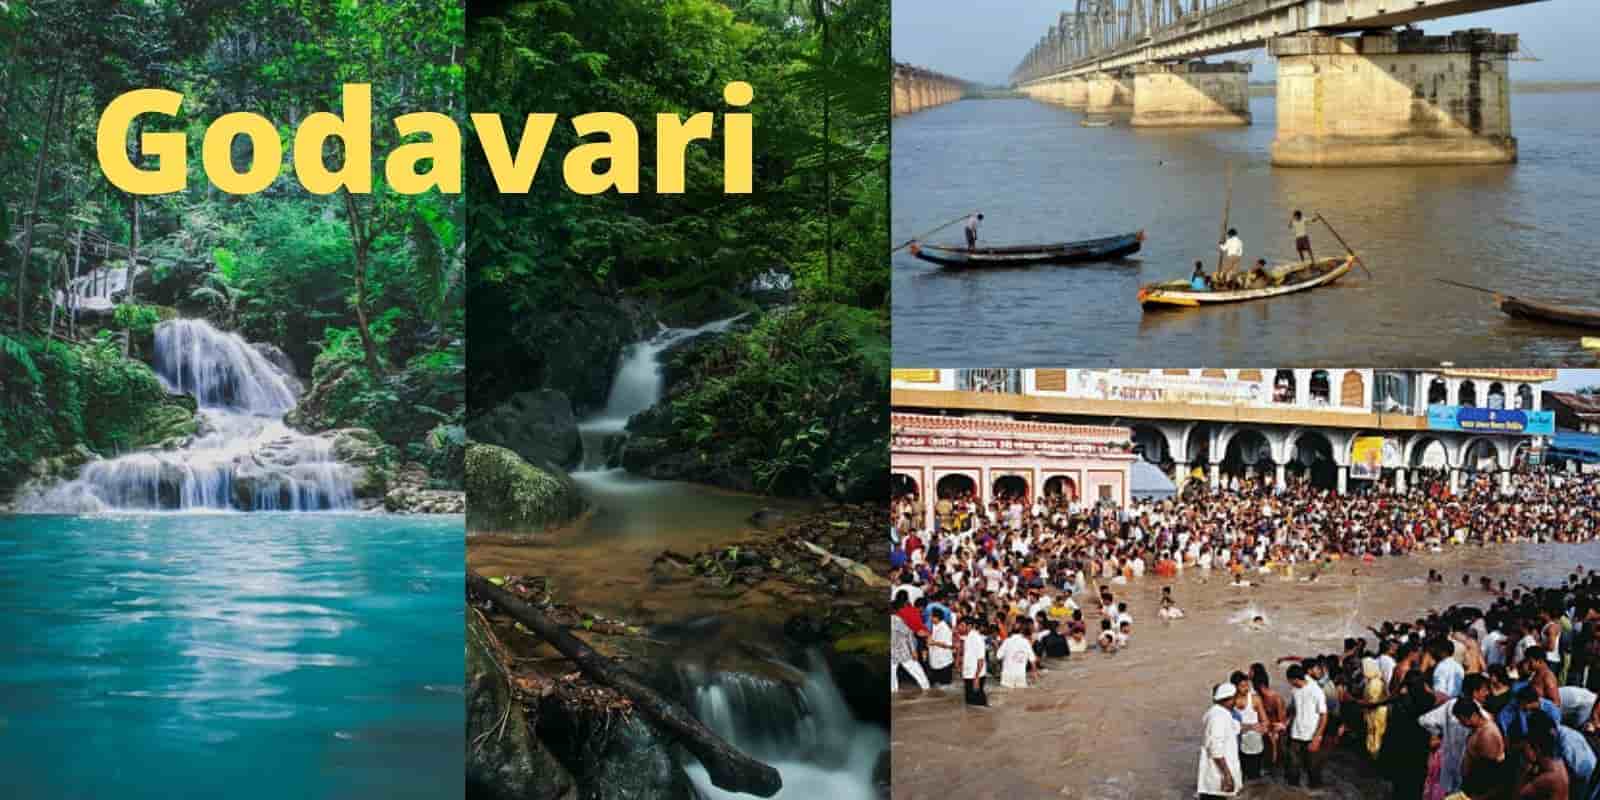 Godavari - The Longest river in India